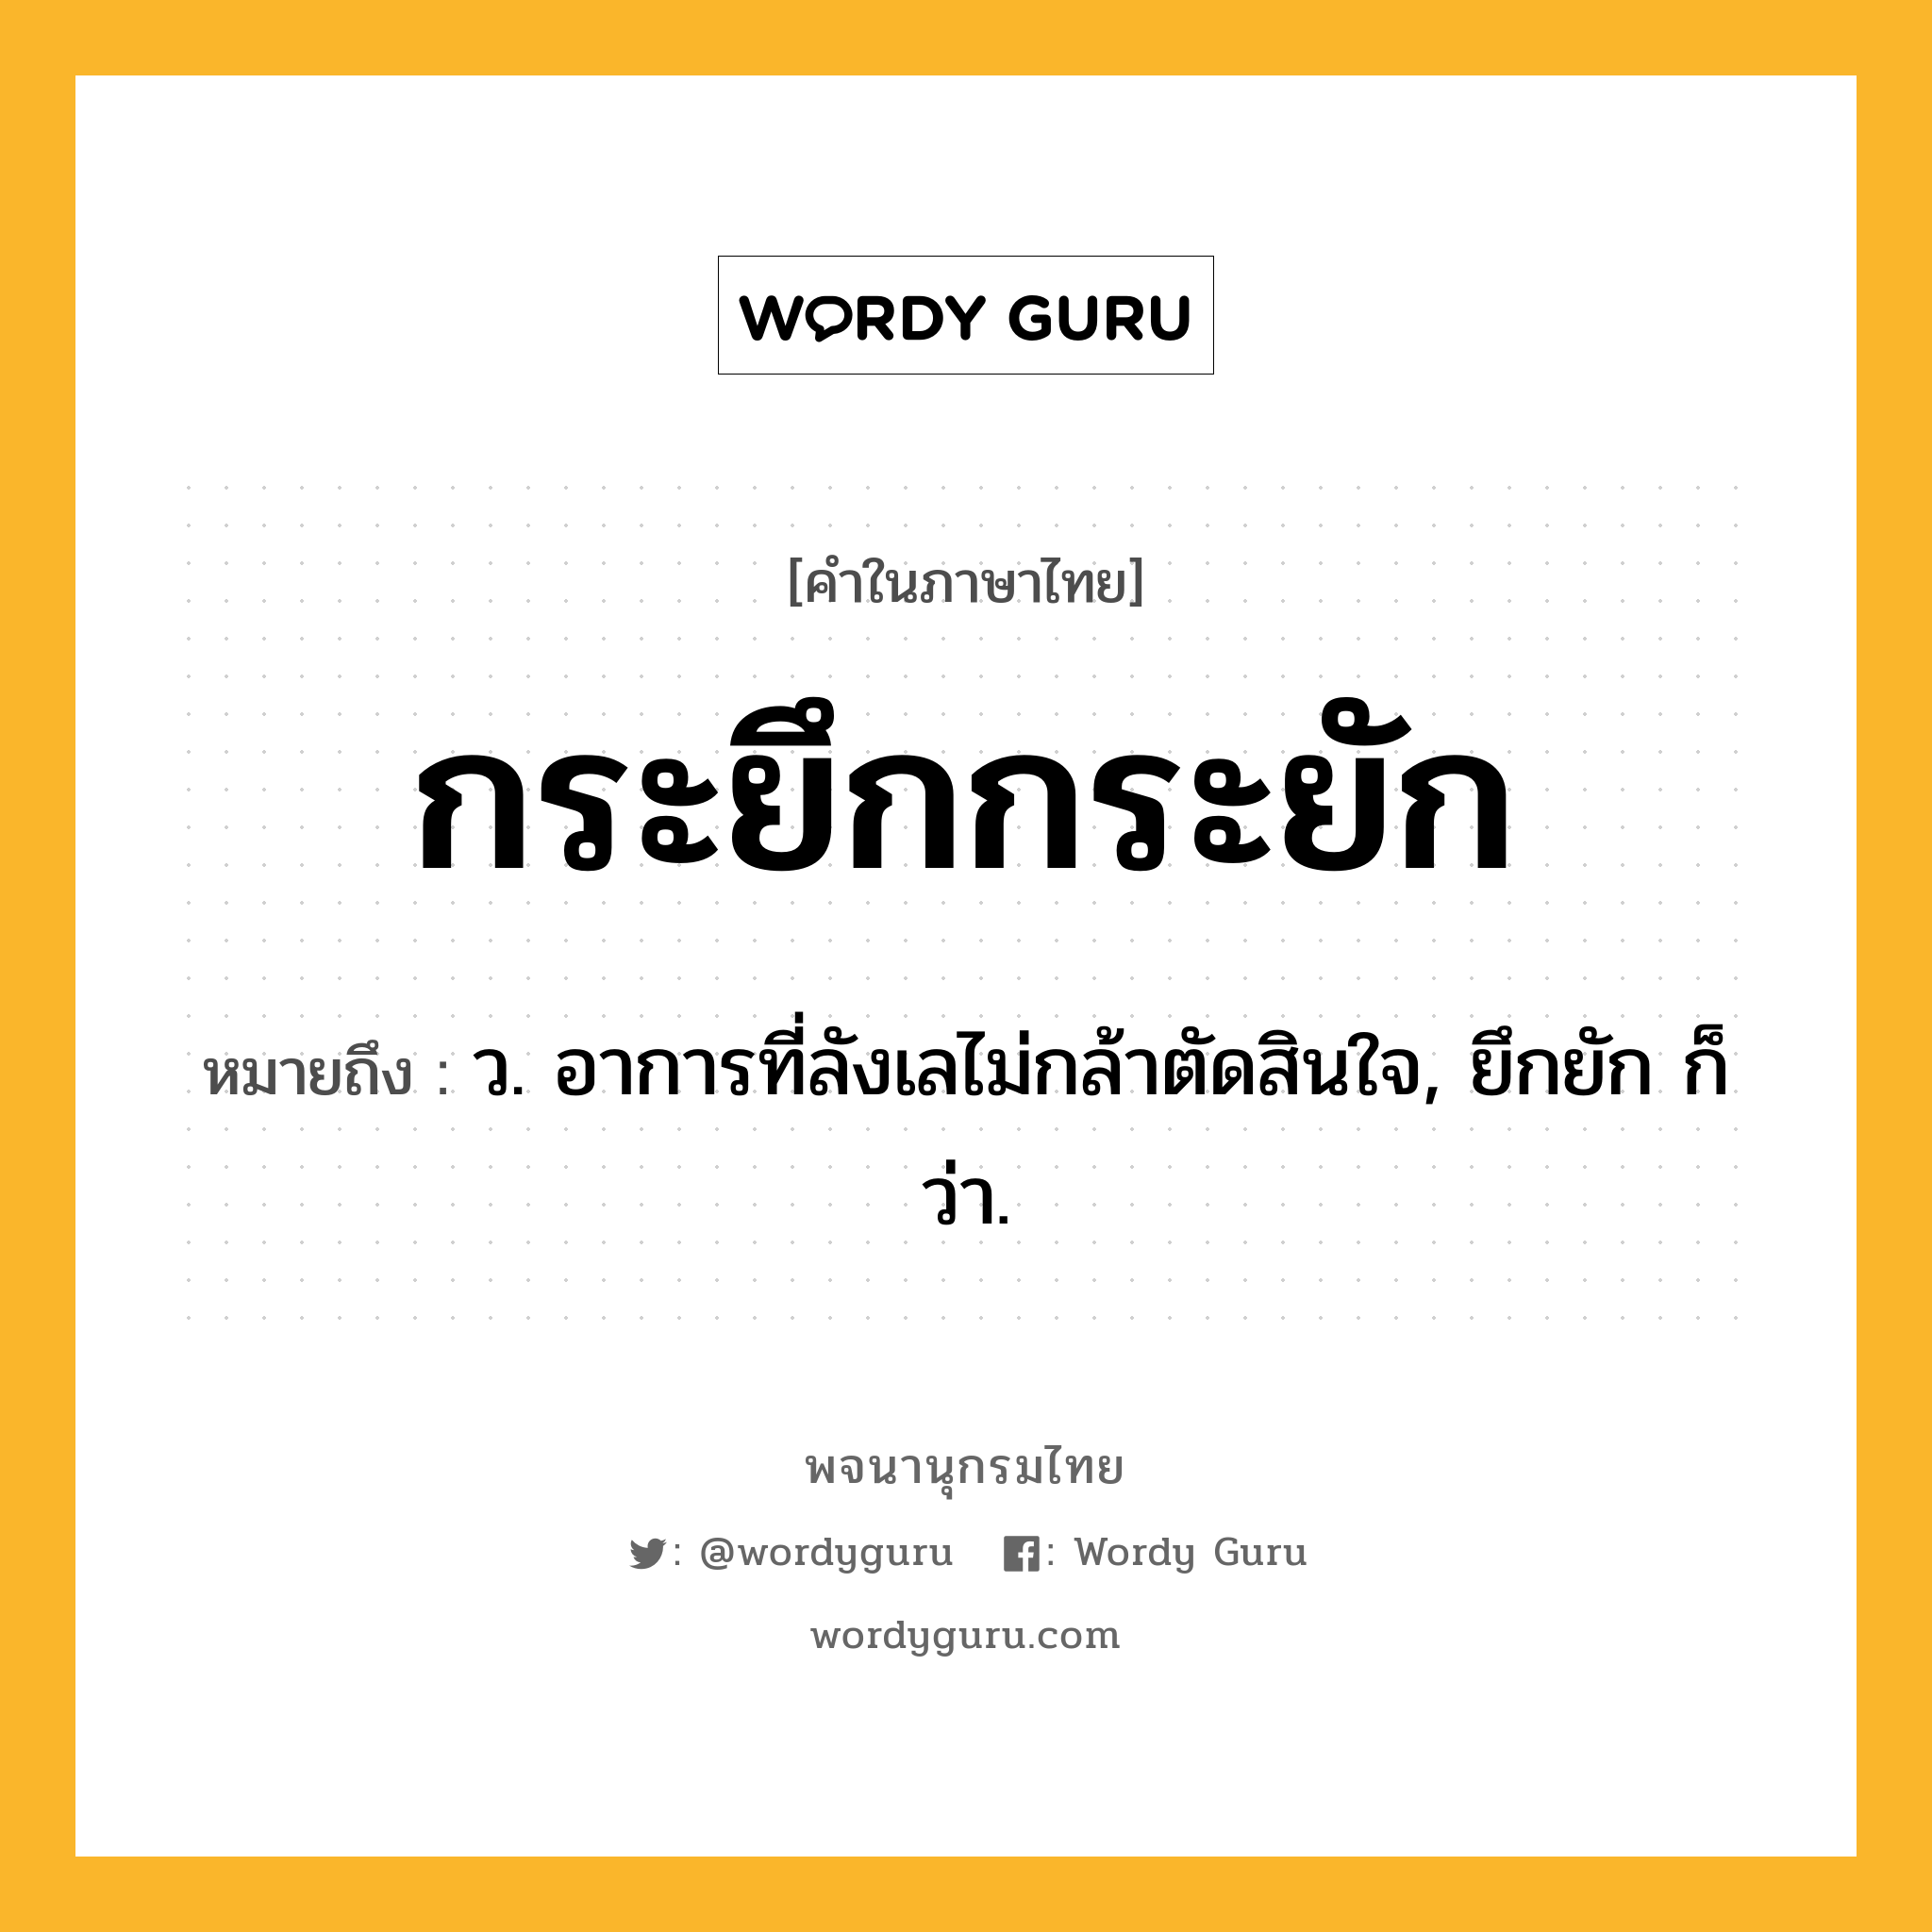 กระยึกกระยัก หมายถึงอะไร?, คำในภาษาไทย กระยึกกระยัก หมายถึง ว. อาการที่ลังเลไม่กล้าตัดสินใจ, ยึกยัก ก็ว่า.